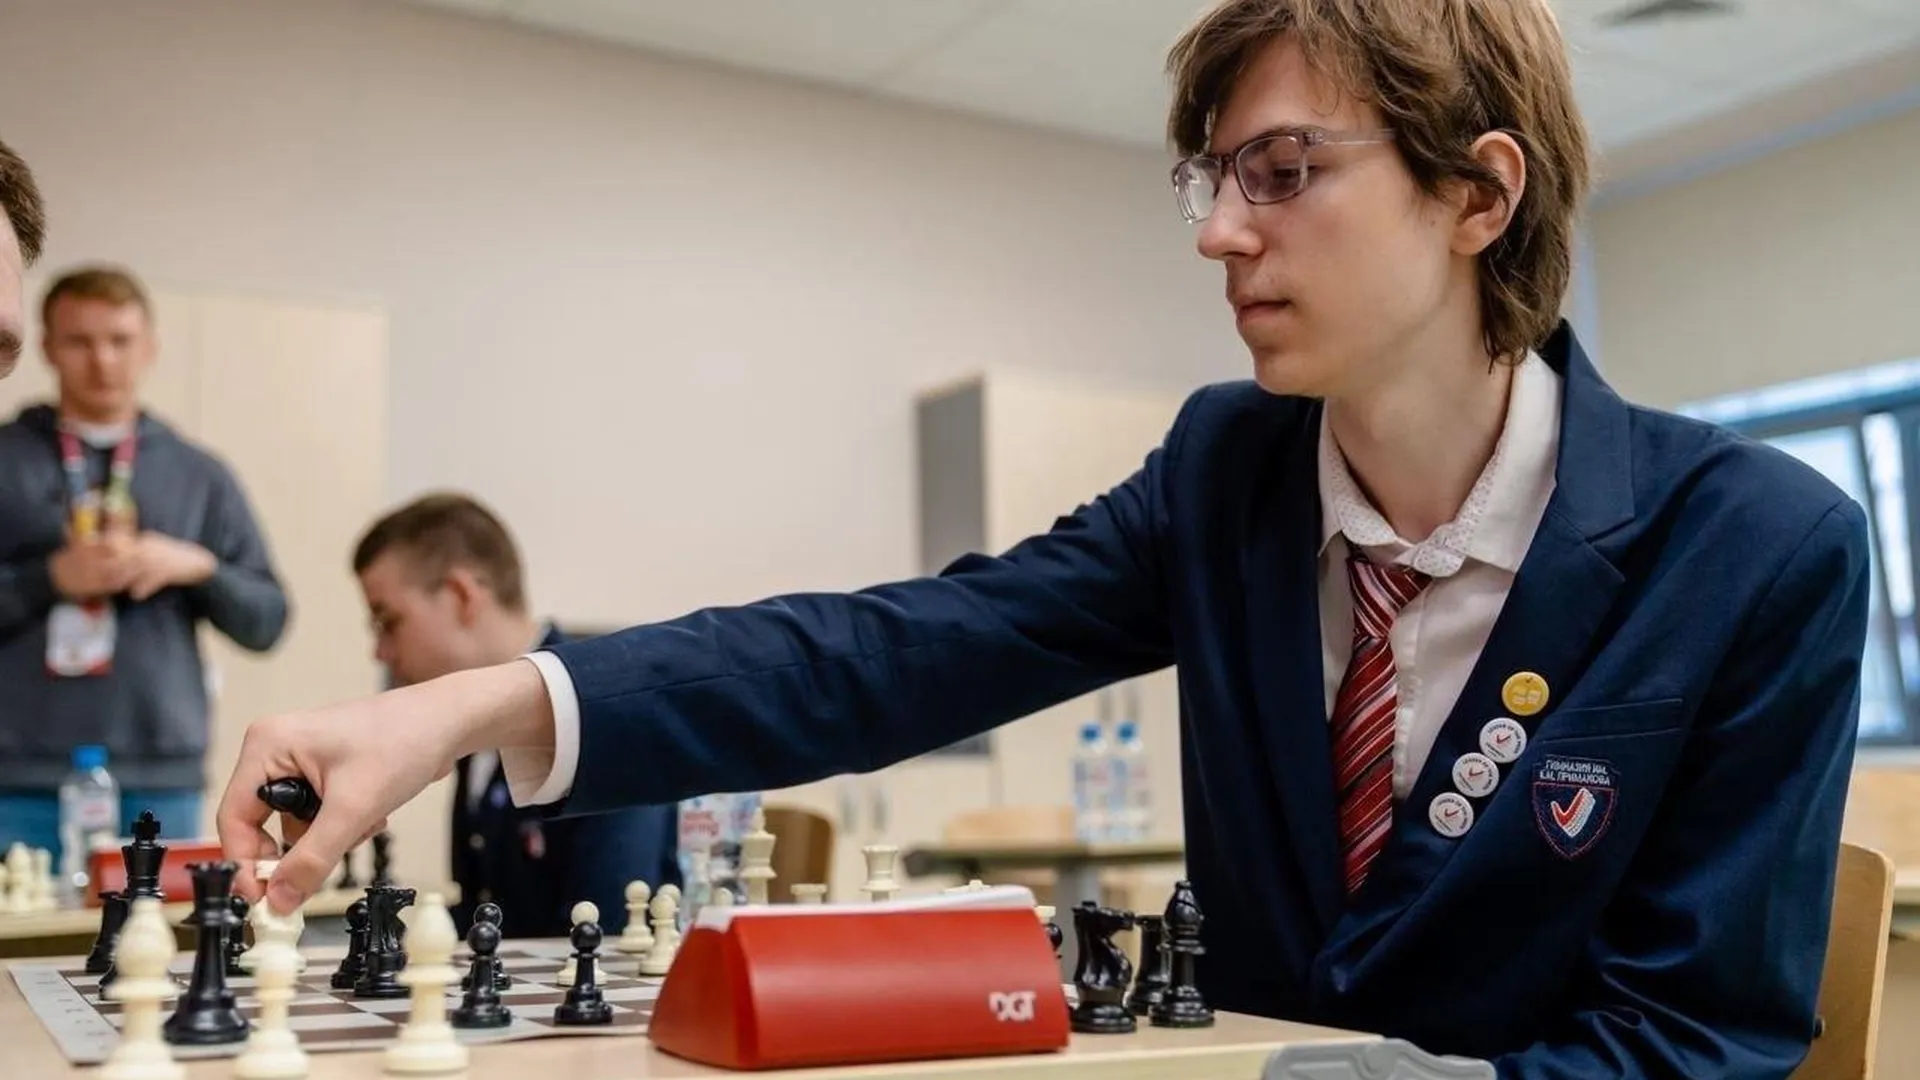 Международный шахматный турнир пройдет в подмосковной гимназии им Примакова 15–20 марта